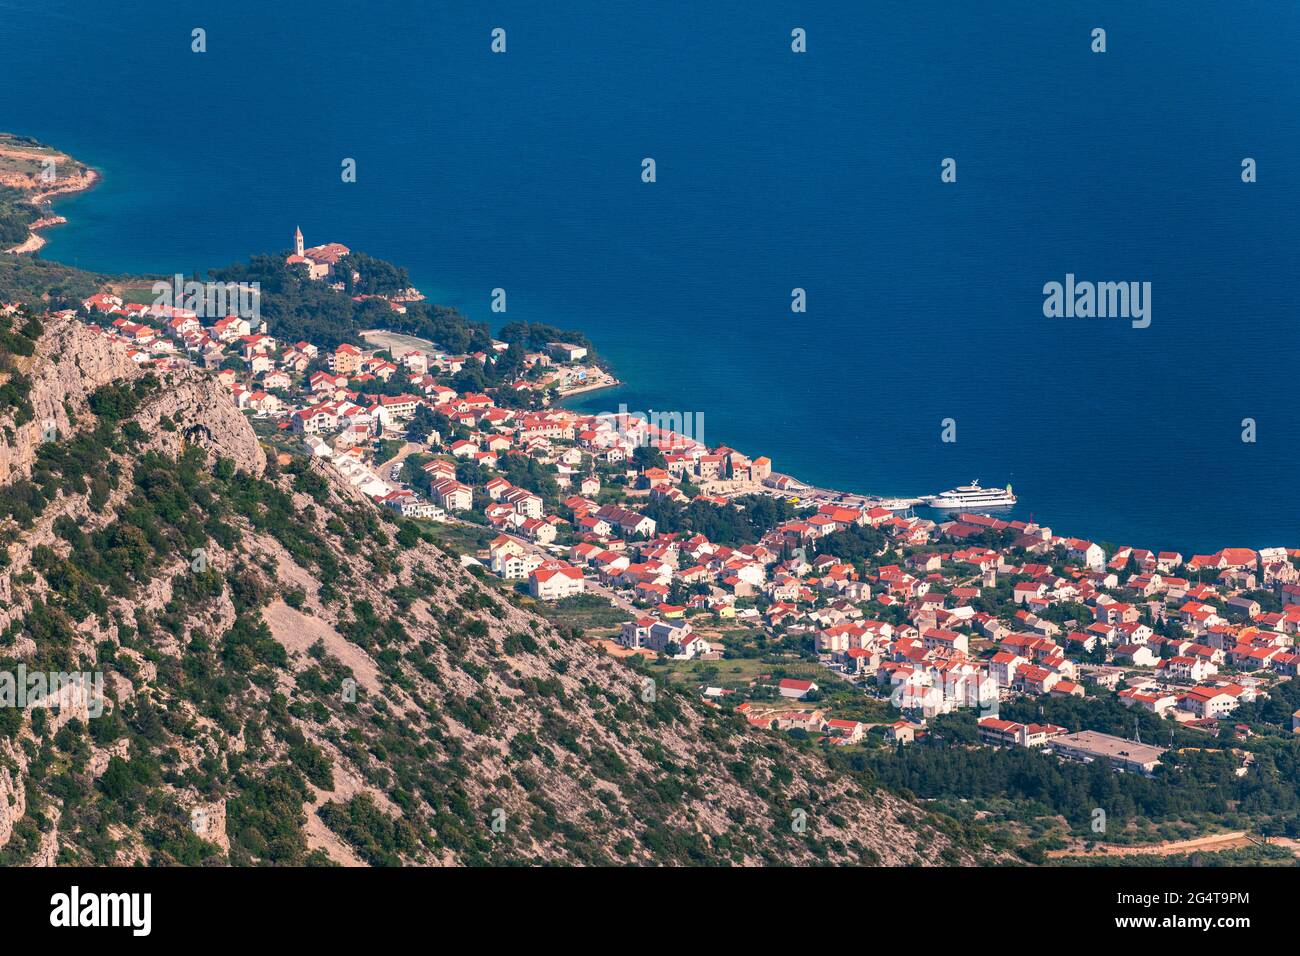 Bol, sur l''île de Brac vue panoramique vue aérienne, la Dalmatie, Croatie. Ville de Bol de Vidova Gora vue aérienne, île de Brac, Croatie. Banque D'Images